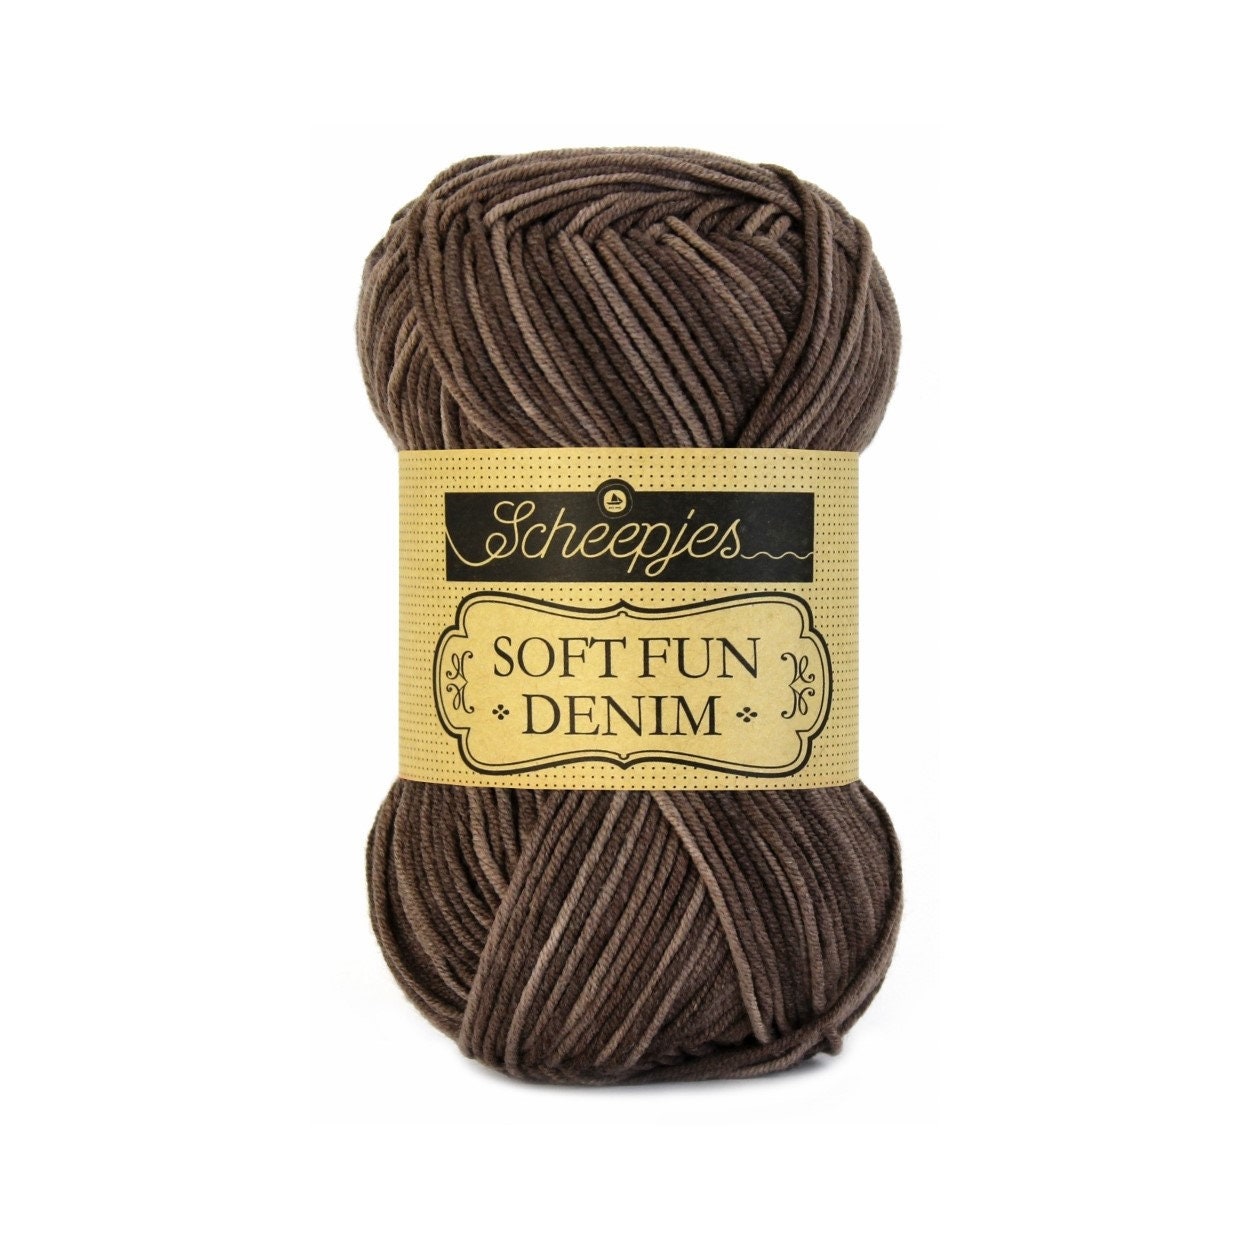 Scheepjes Softfun Denim DK Cotton Mix Easy Care Brown Yarn 50g 510 -   Portugal